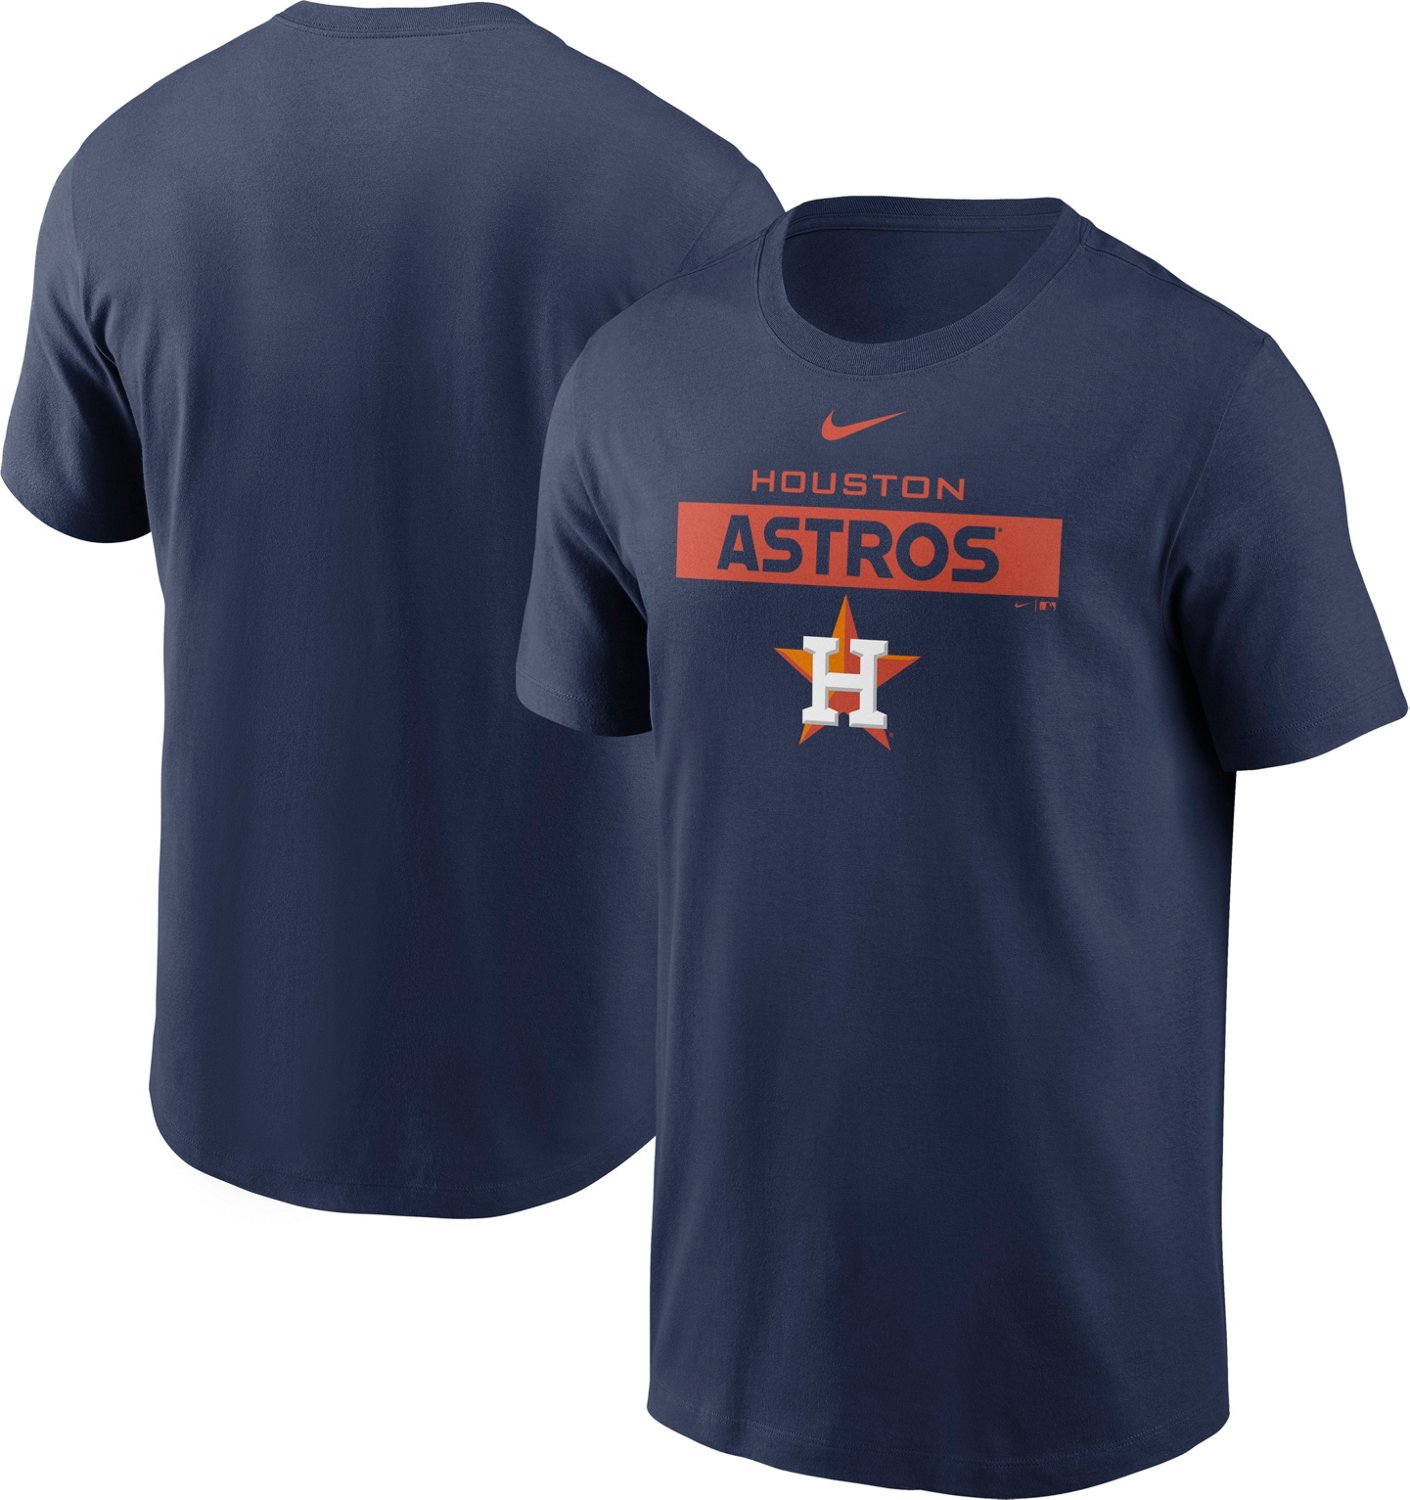 Nike Men's Houston Astros Team Issue T-shirt